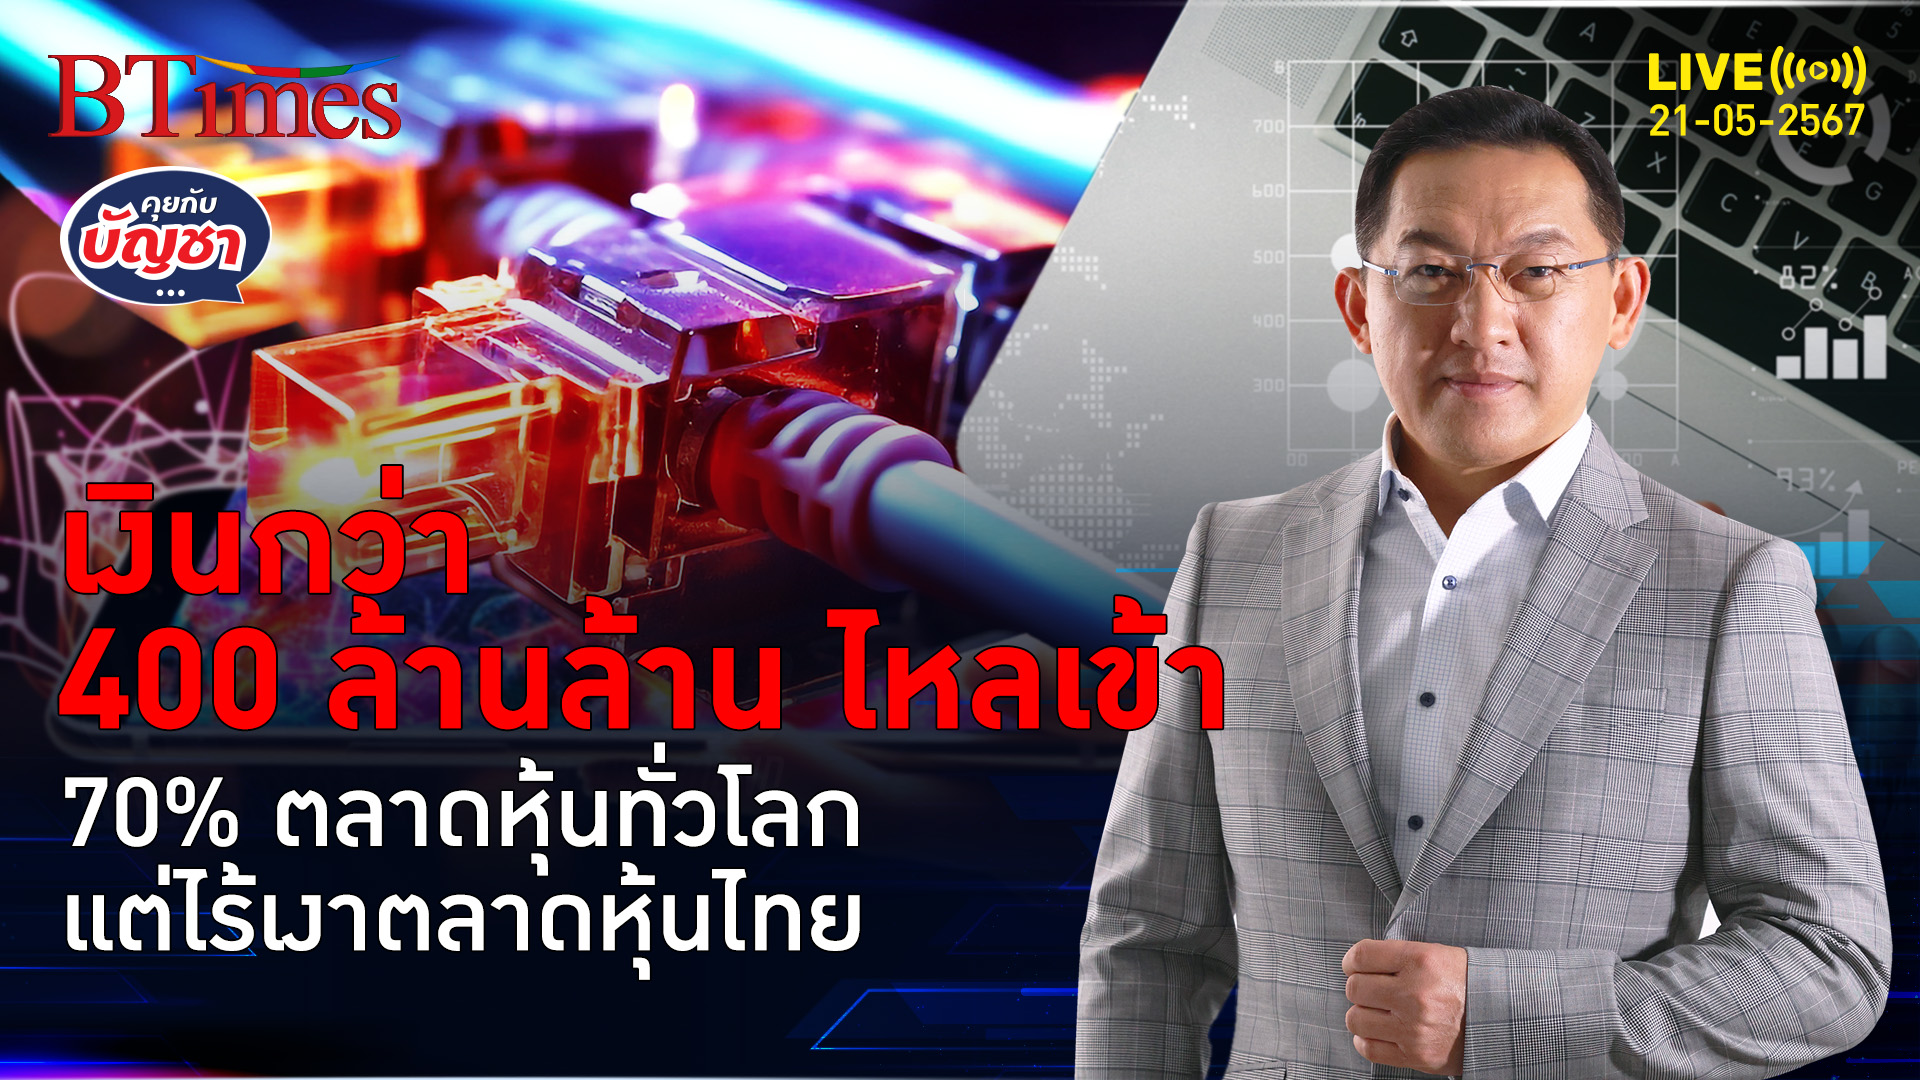 เทเงินกว่า 400 ล้านล้าน เข้าตลาดหุ้นยักษ์ทั่วโลก ตลาดหุ้นไทยที่ถูกลืม | คุยกับบัญชา l 21 พ.ค. 67